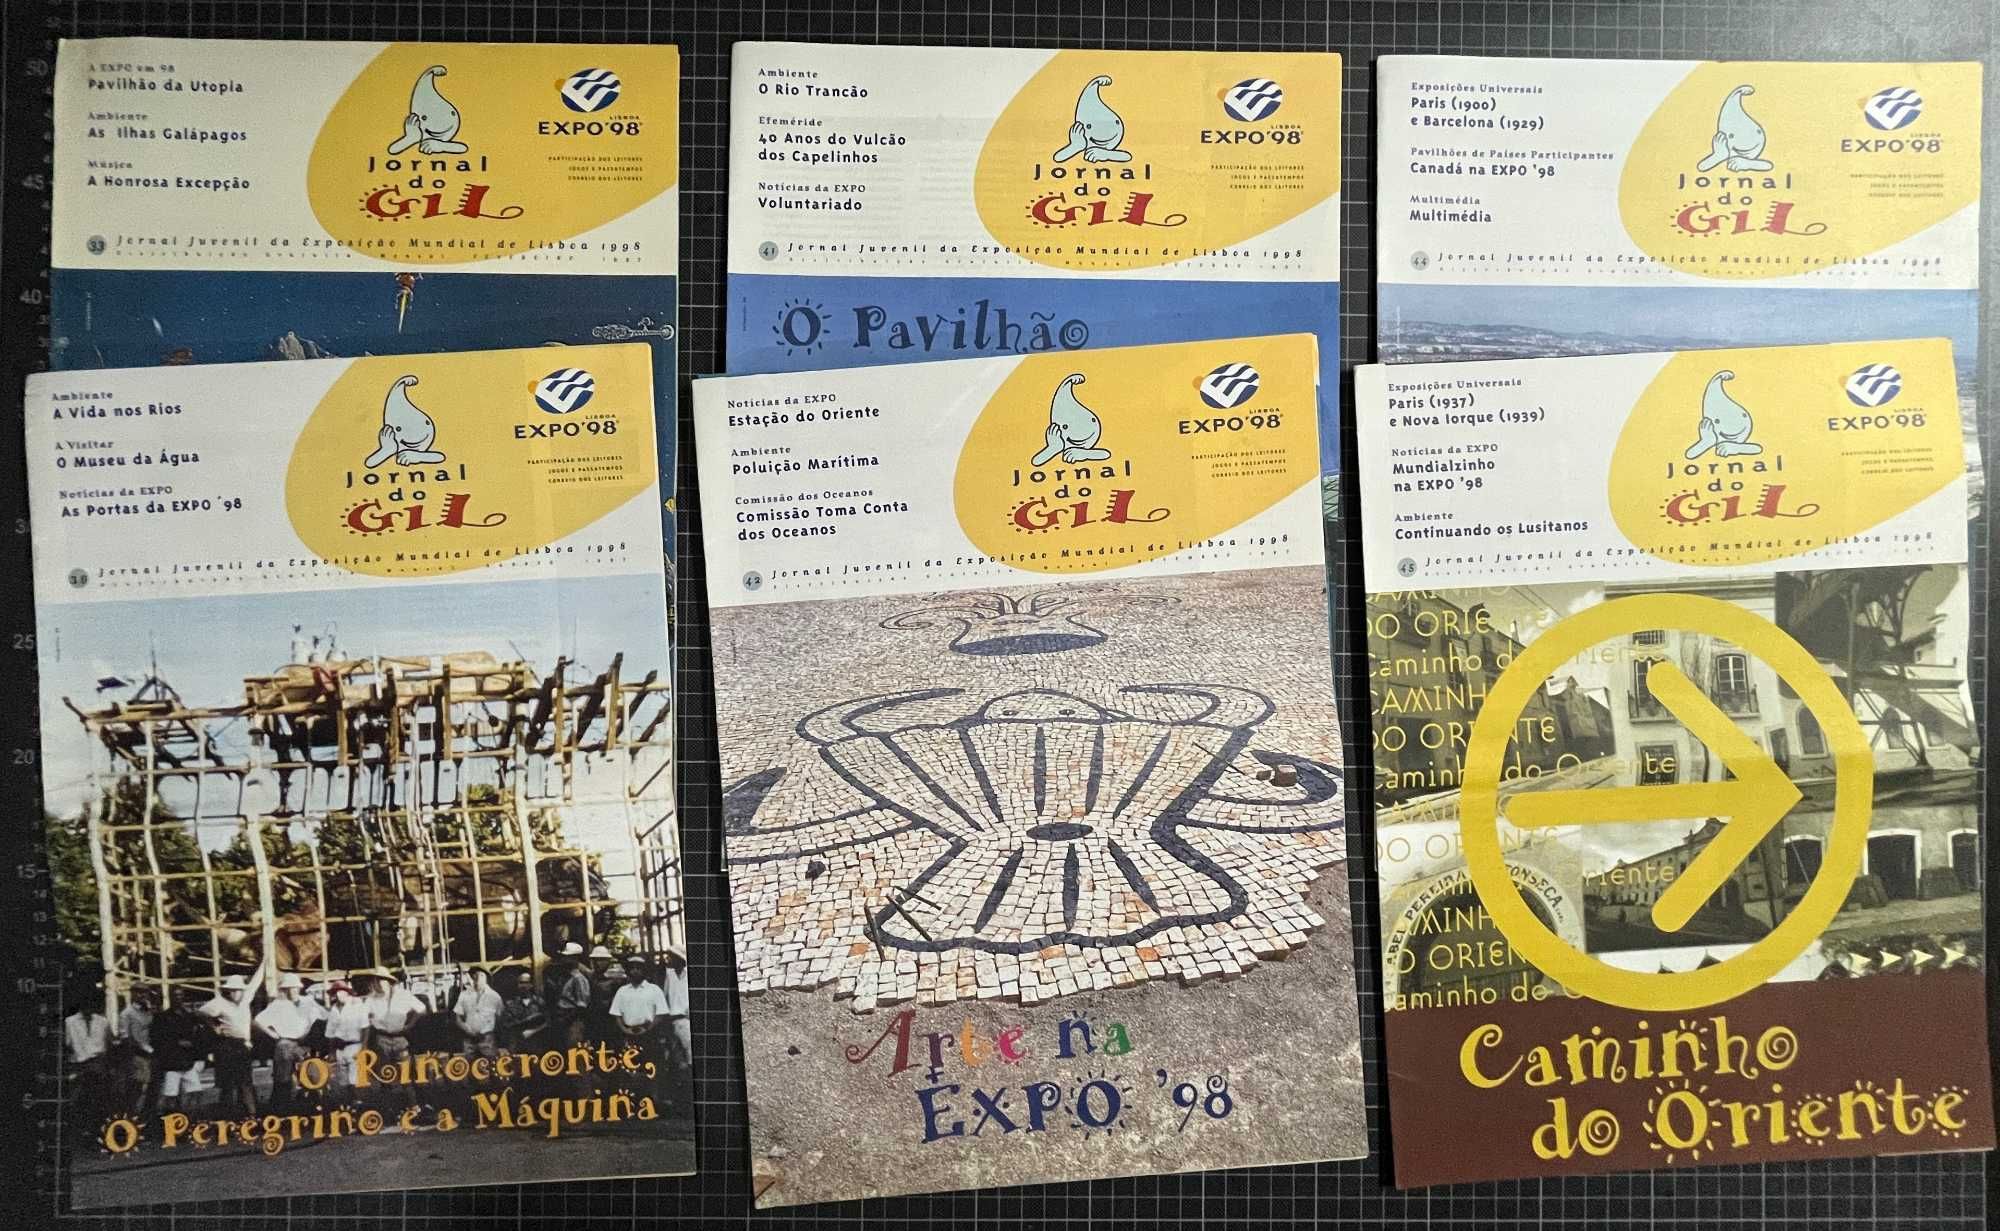 Lote de publicações da EXPO 98